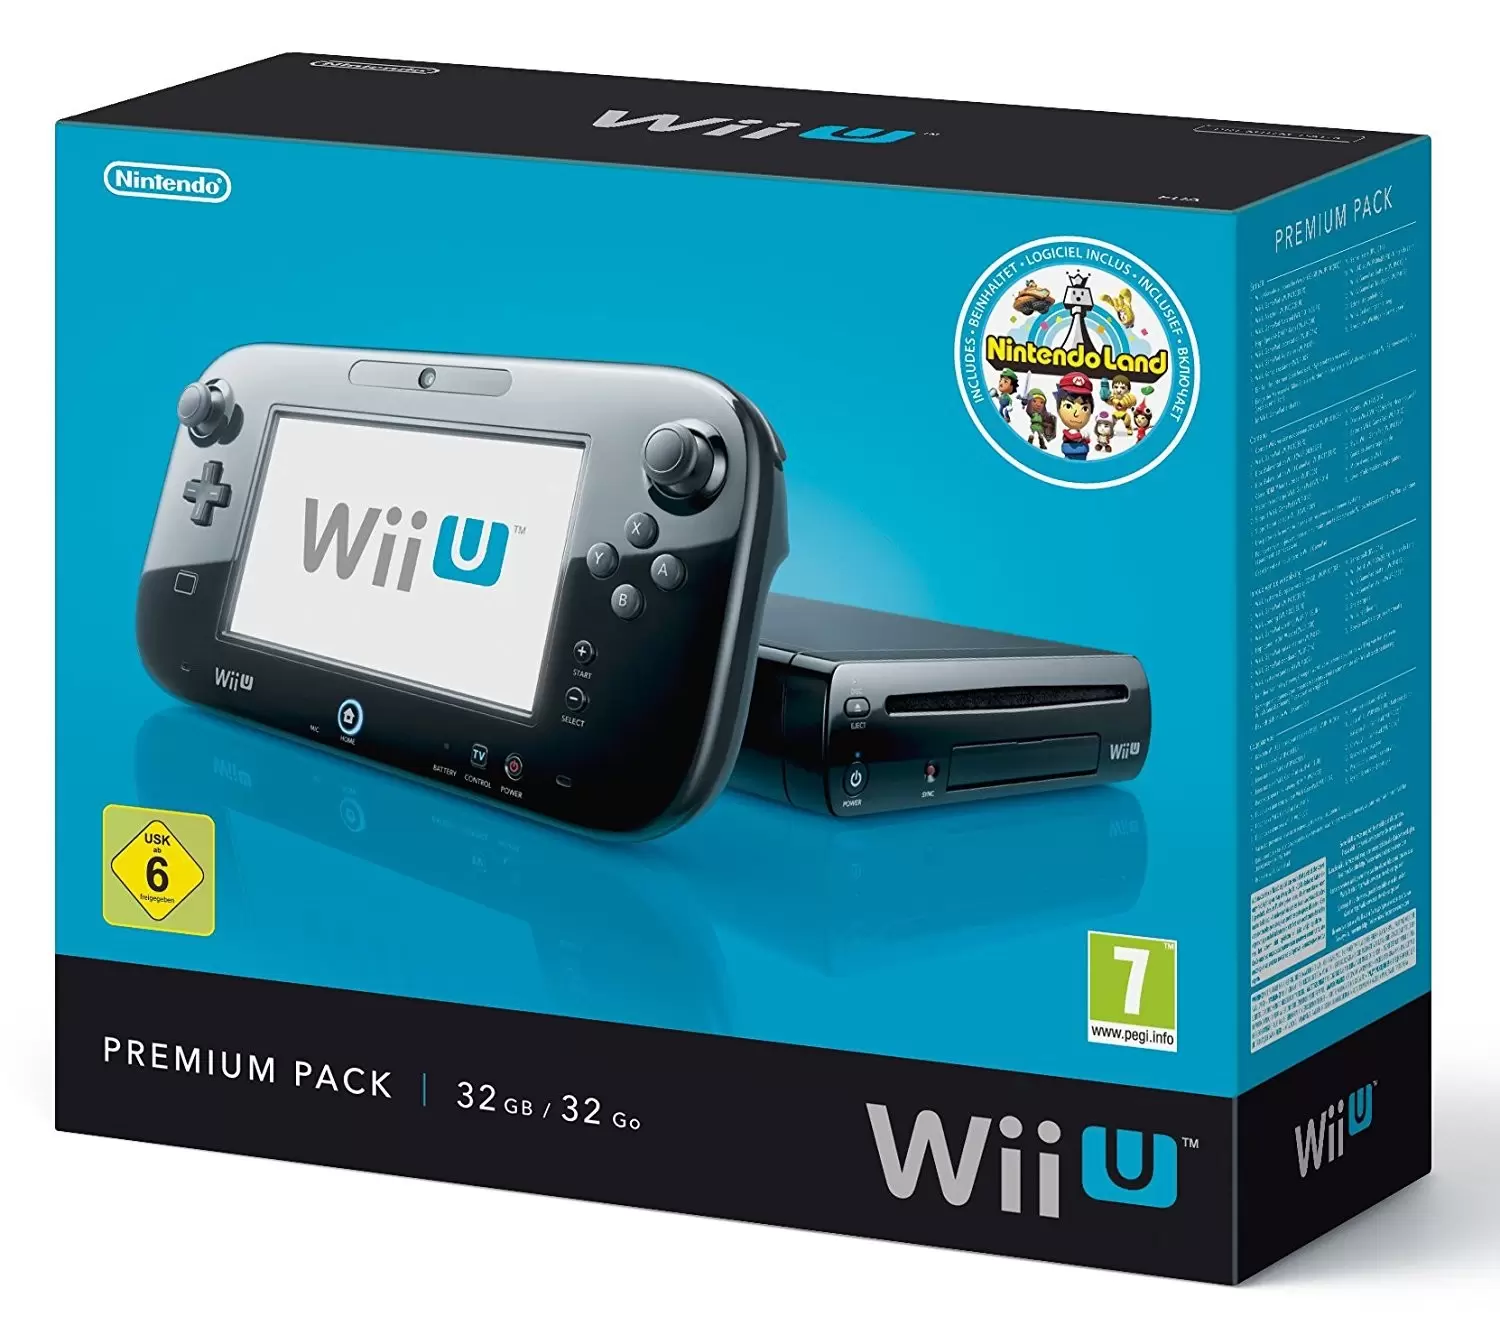 Matériel Wii U - Console Wii U noire - Premium Pack